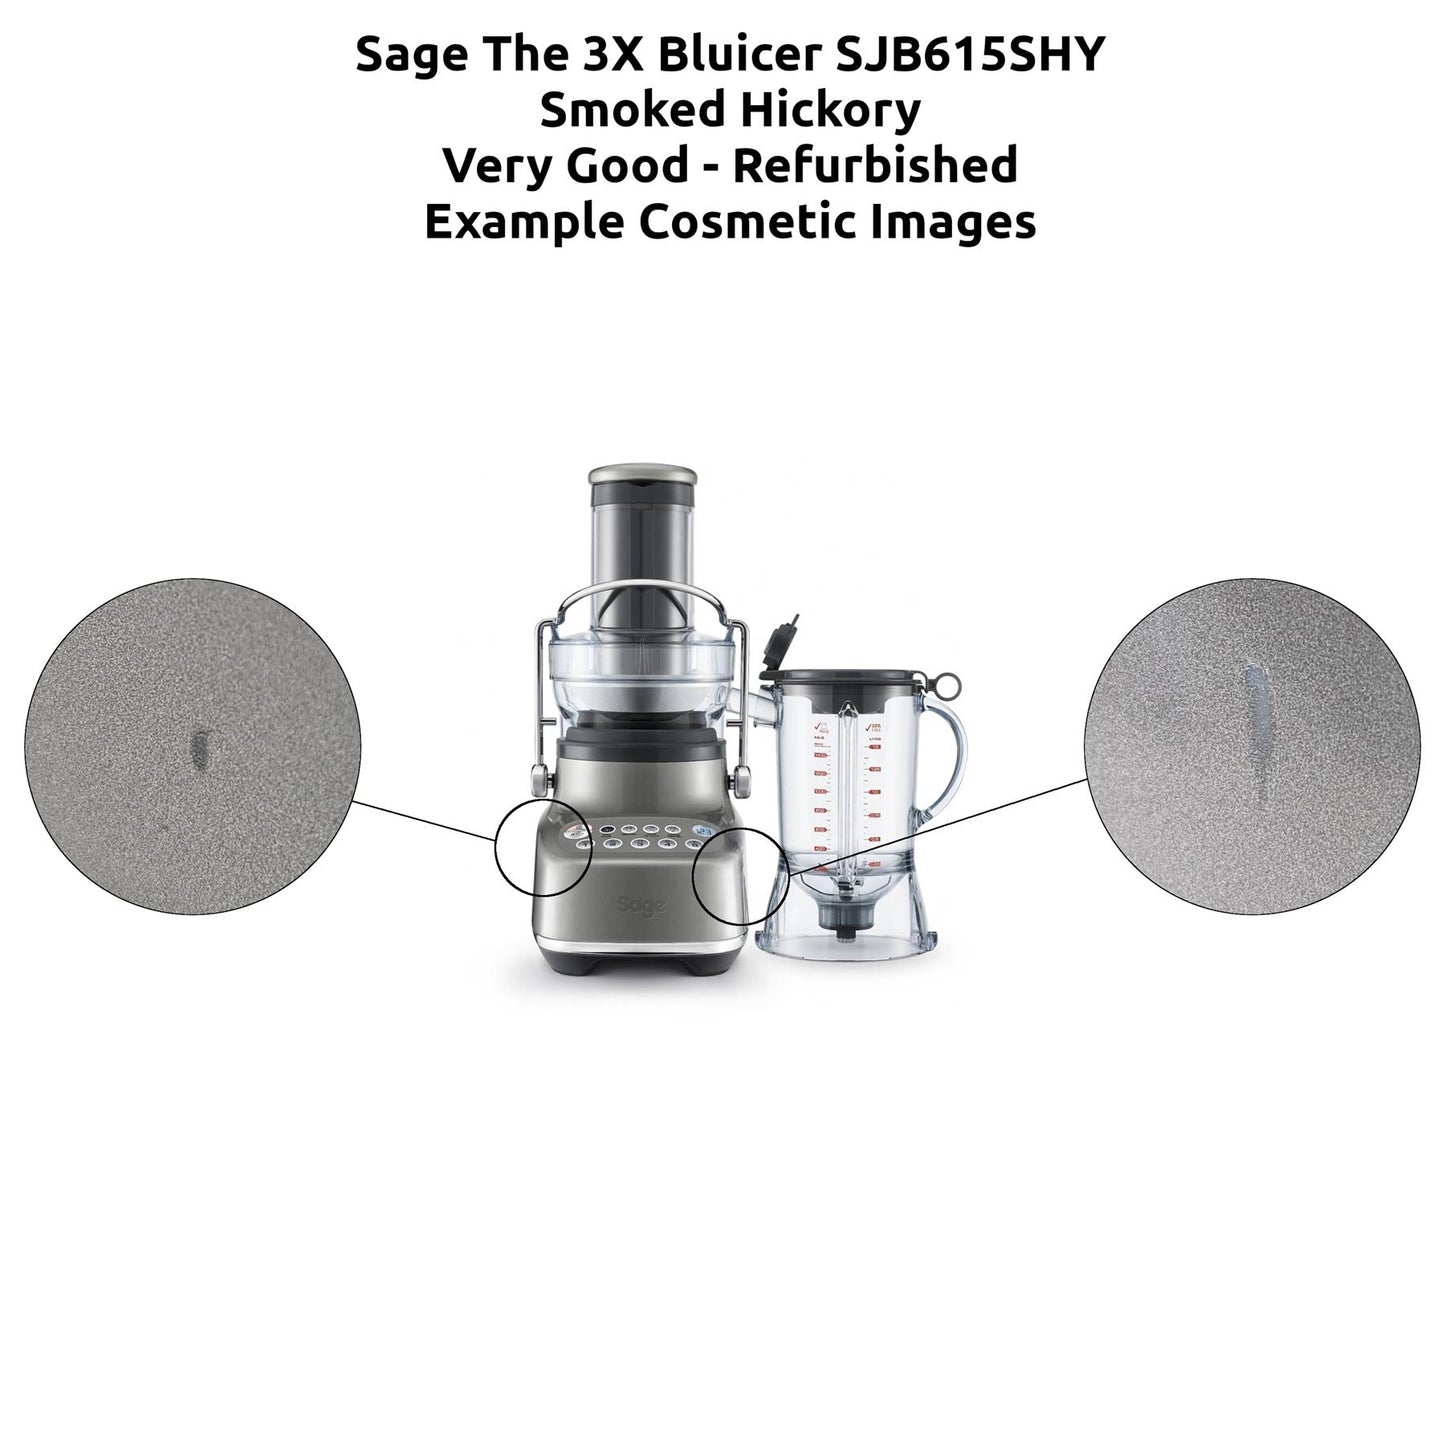 Sage The 3X Bluicer SJB615 Blender Juicer